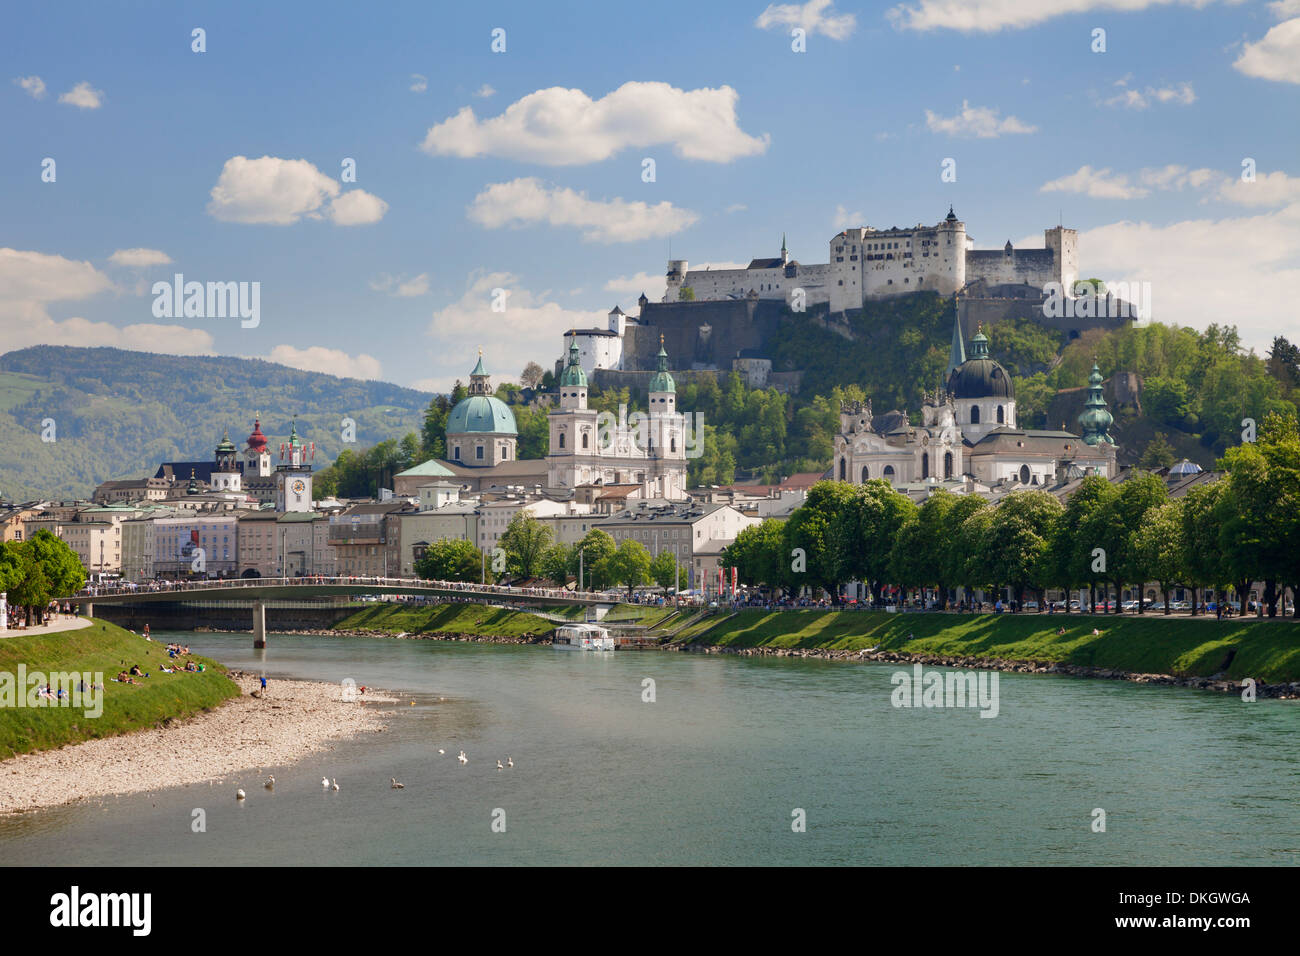 Casco antiguo, el sitio de la UNESCO, con la Fortaleza de Hohensalzburg y Dom, la Catedral y el río Salzach, Salzburgo, Austria Salzburger Land Foto de stock